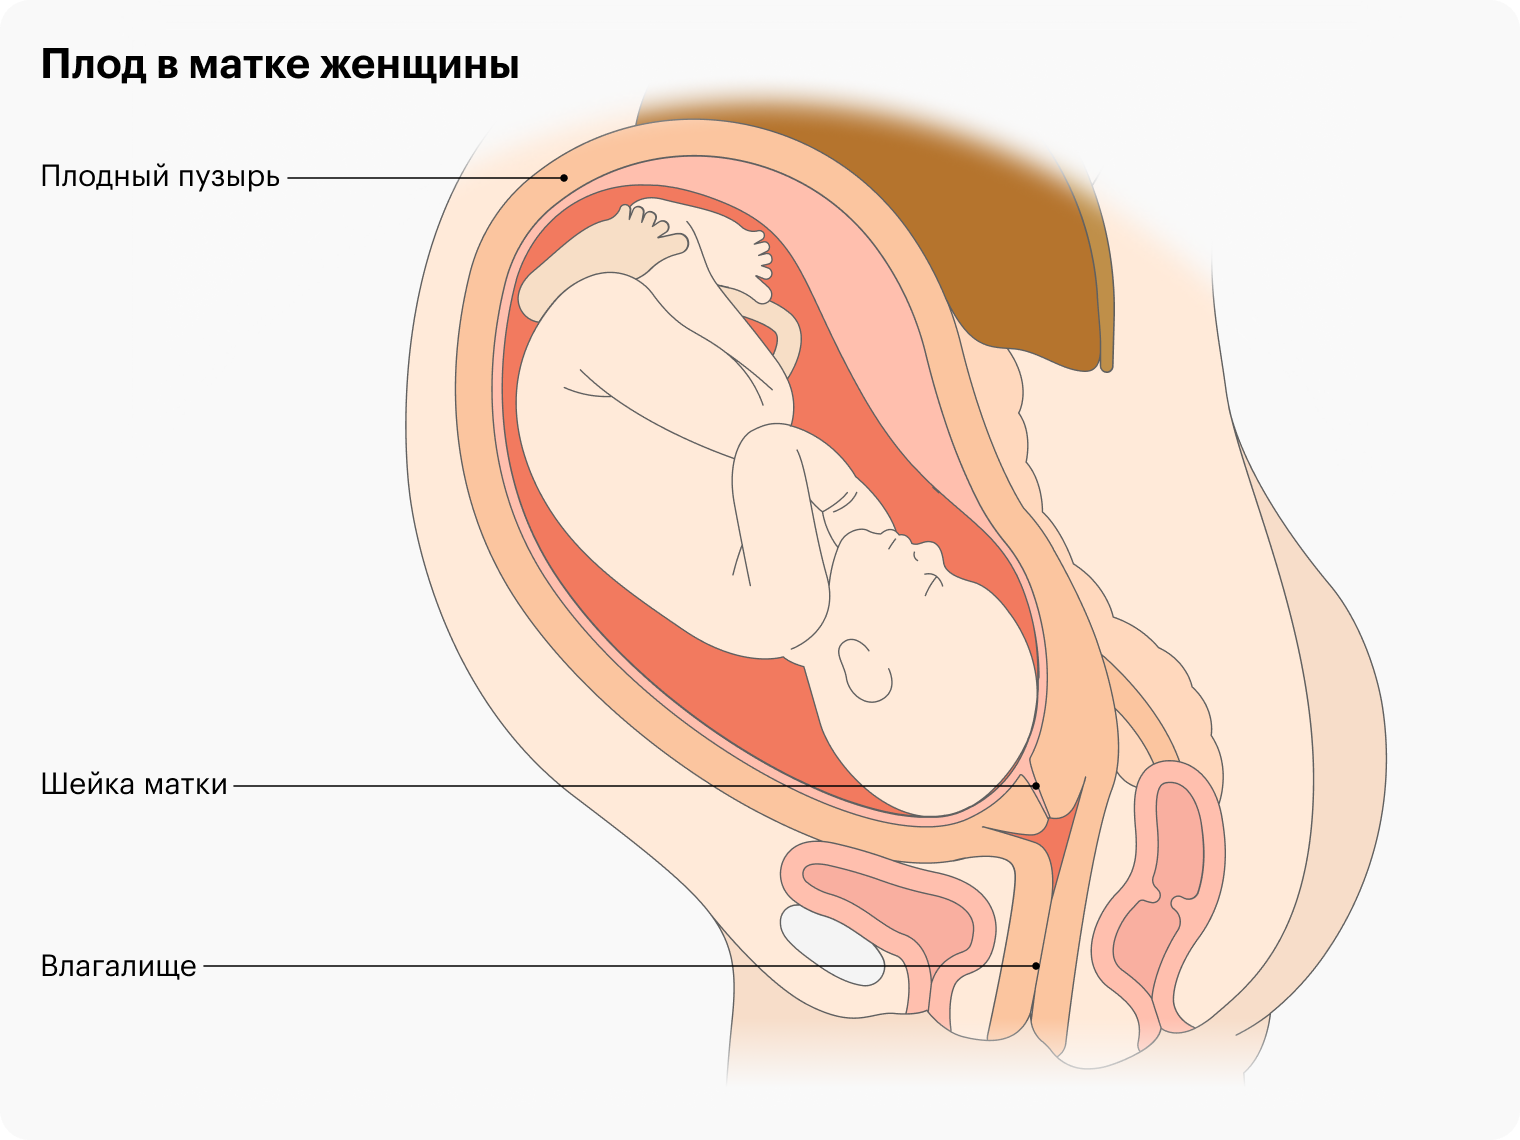 Топ-6 удобных поз для секса во время беременности